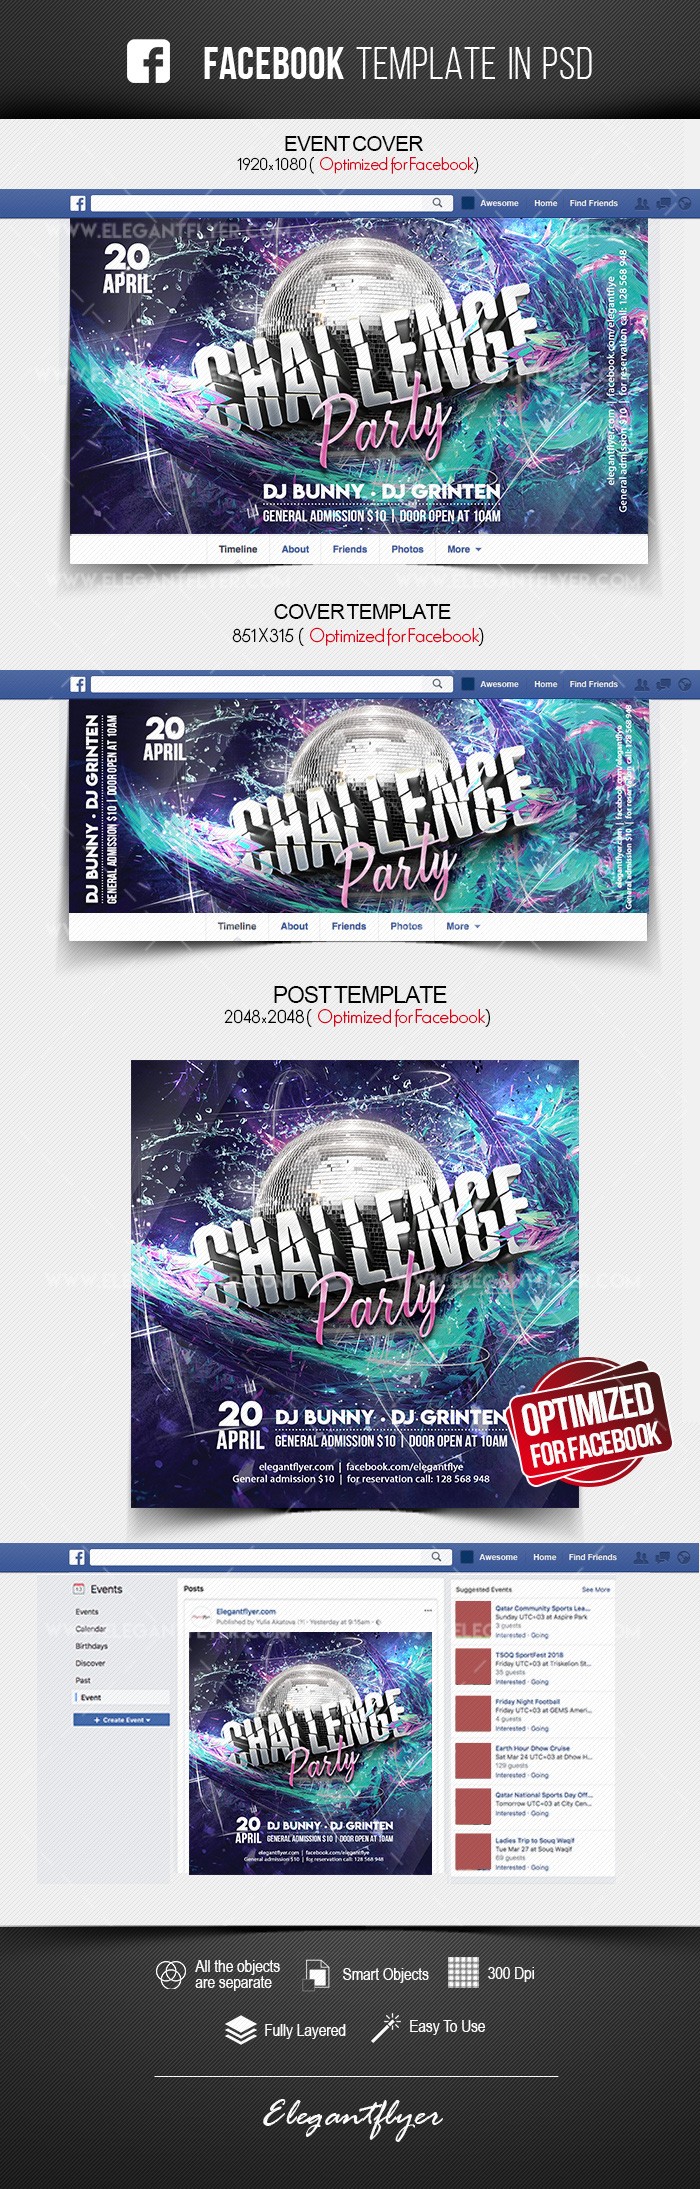 Herausforderung Party Facebook by ElegantFlyer